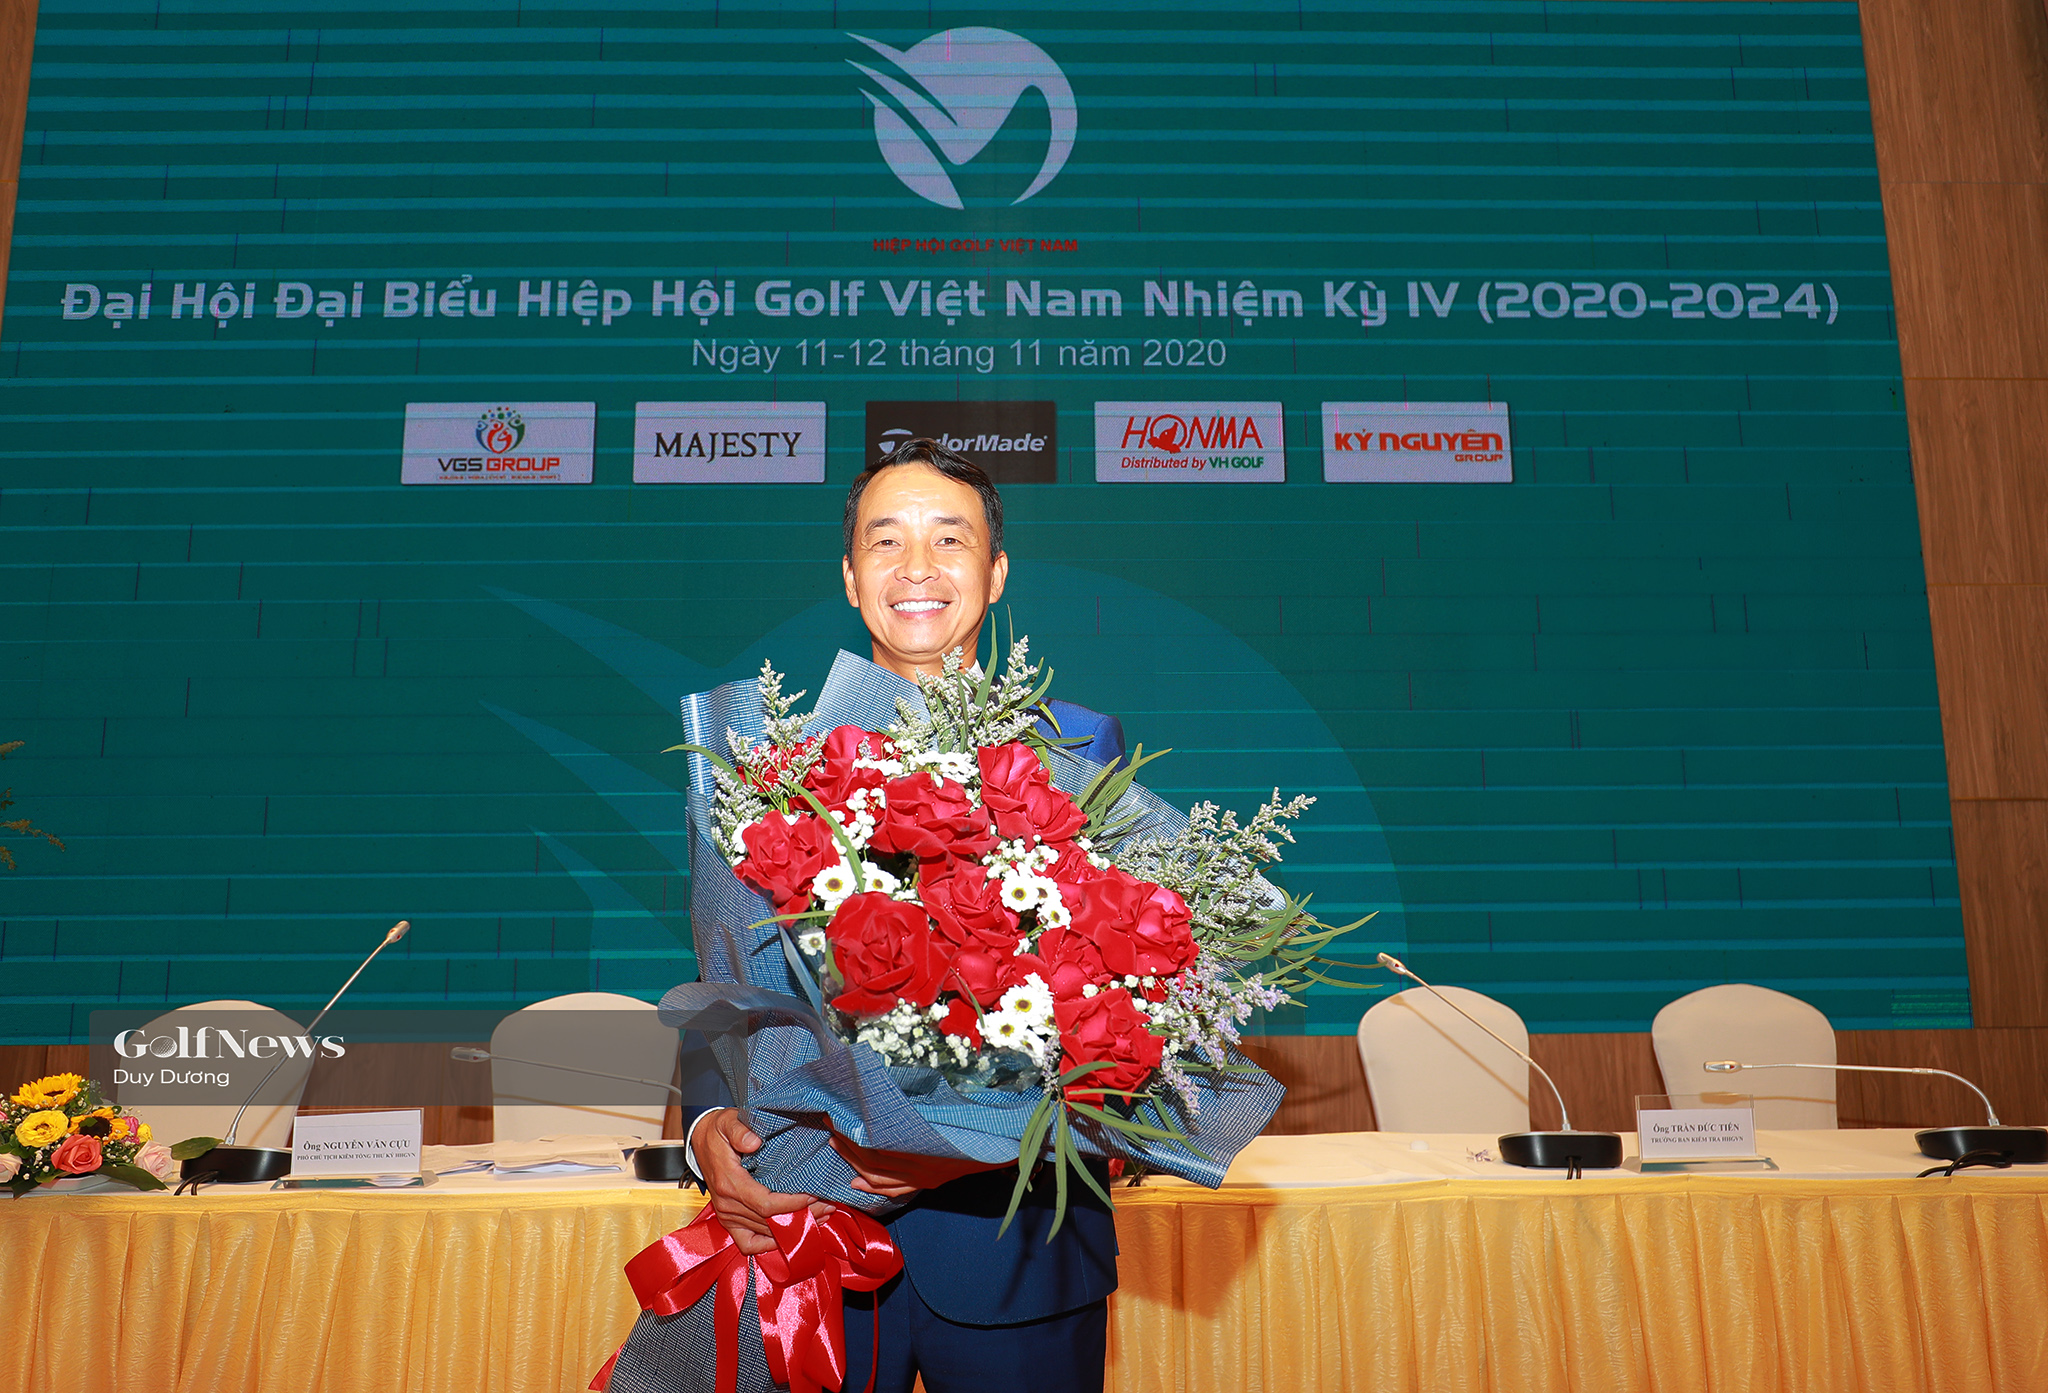 Ông Lê Kiên Thành tái ứng cử chủ tịch, Ông Lê Hùng Nam làm Tổng thư ký Hiệp hội golf Việt Nam nhiệm kỳ IV.